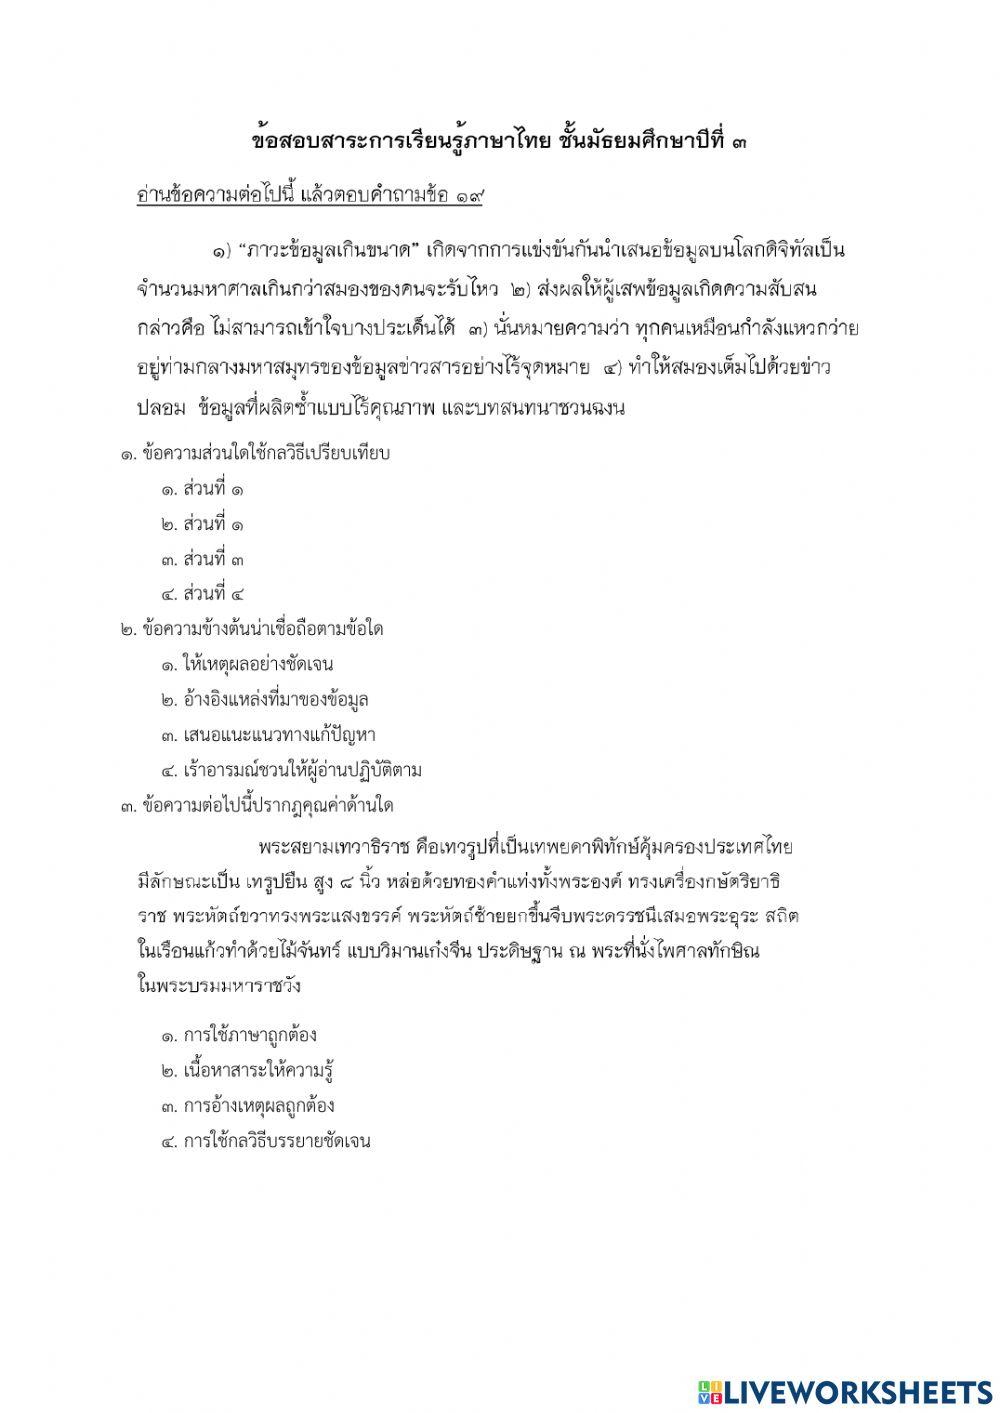 ข้อสอบภาษาไทย